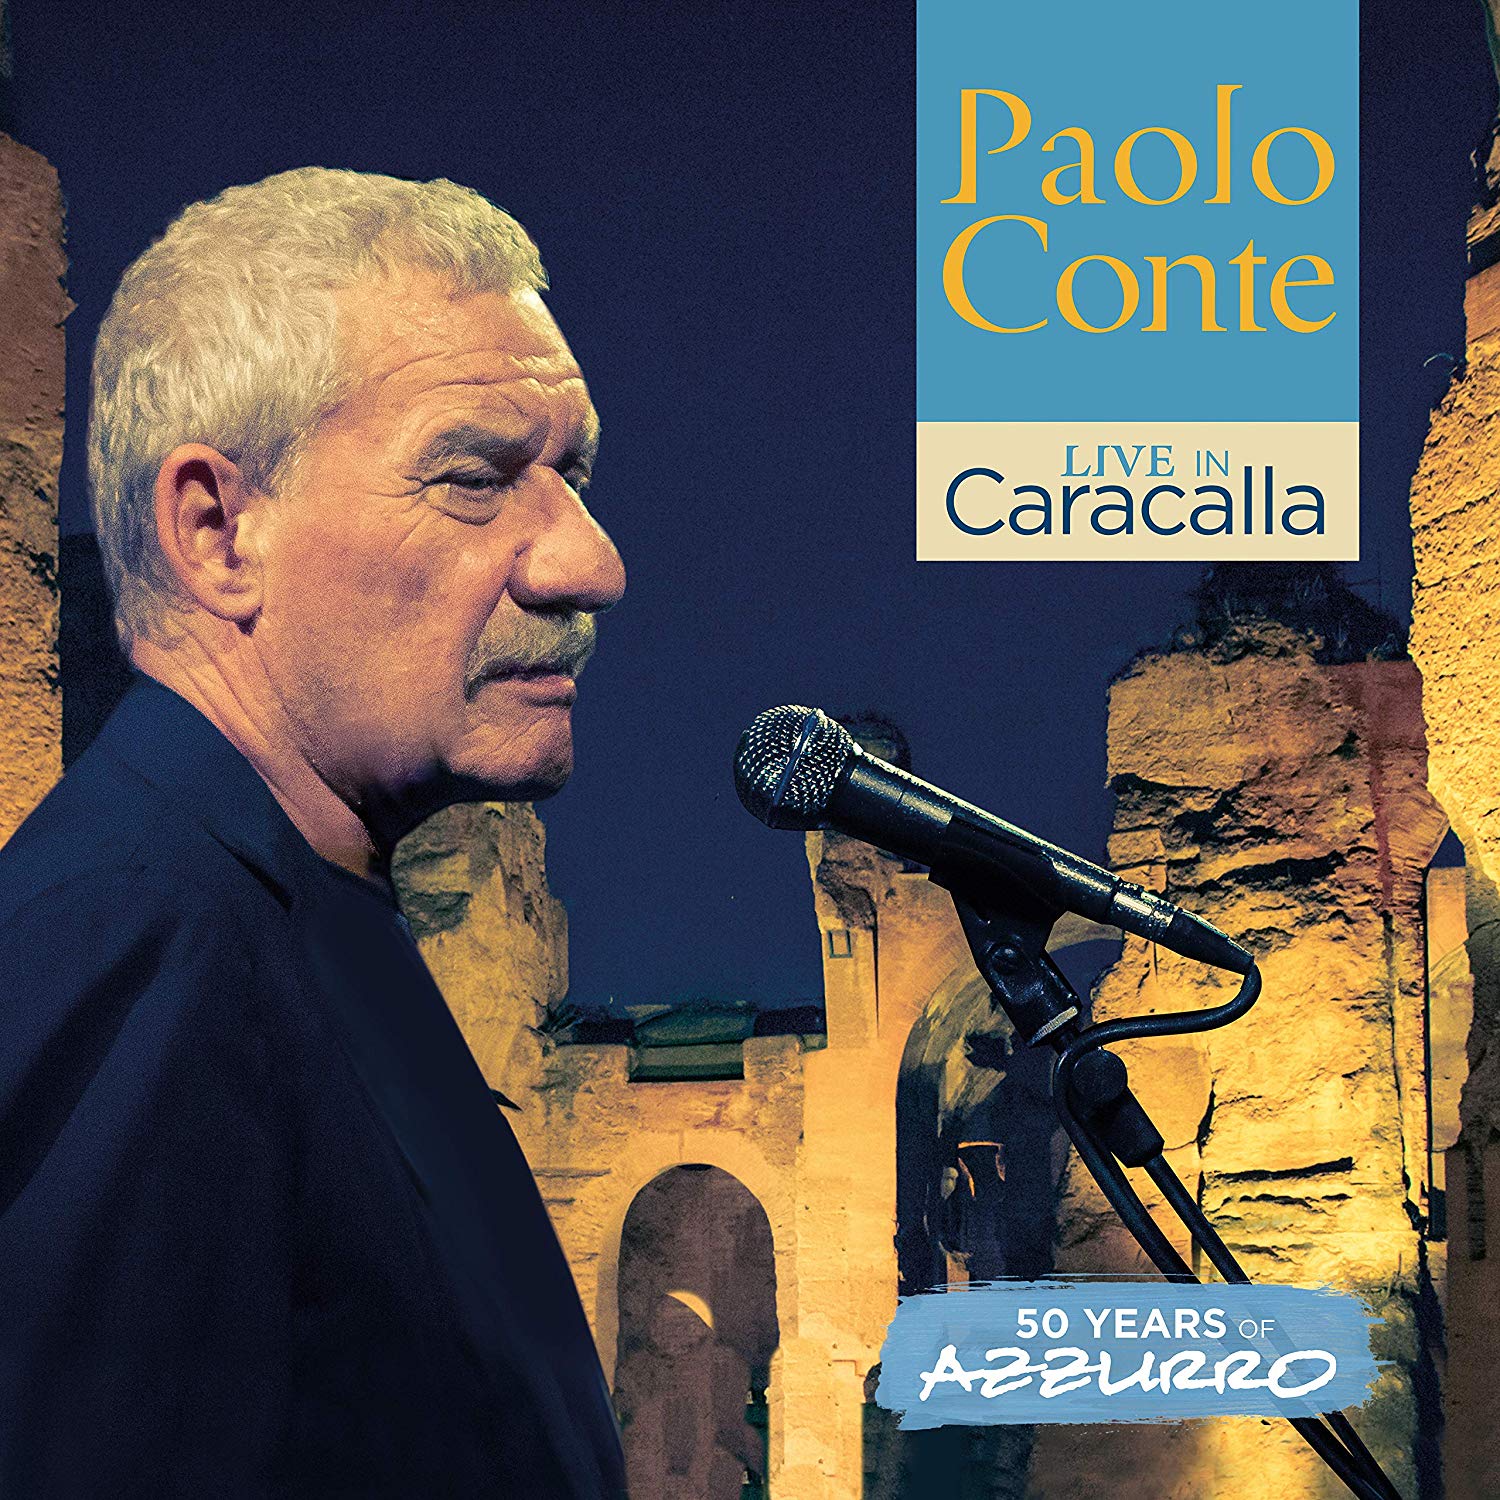 Paolo conte album download